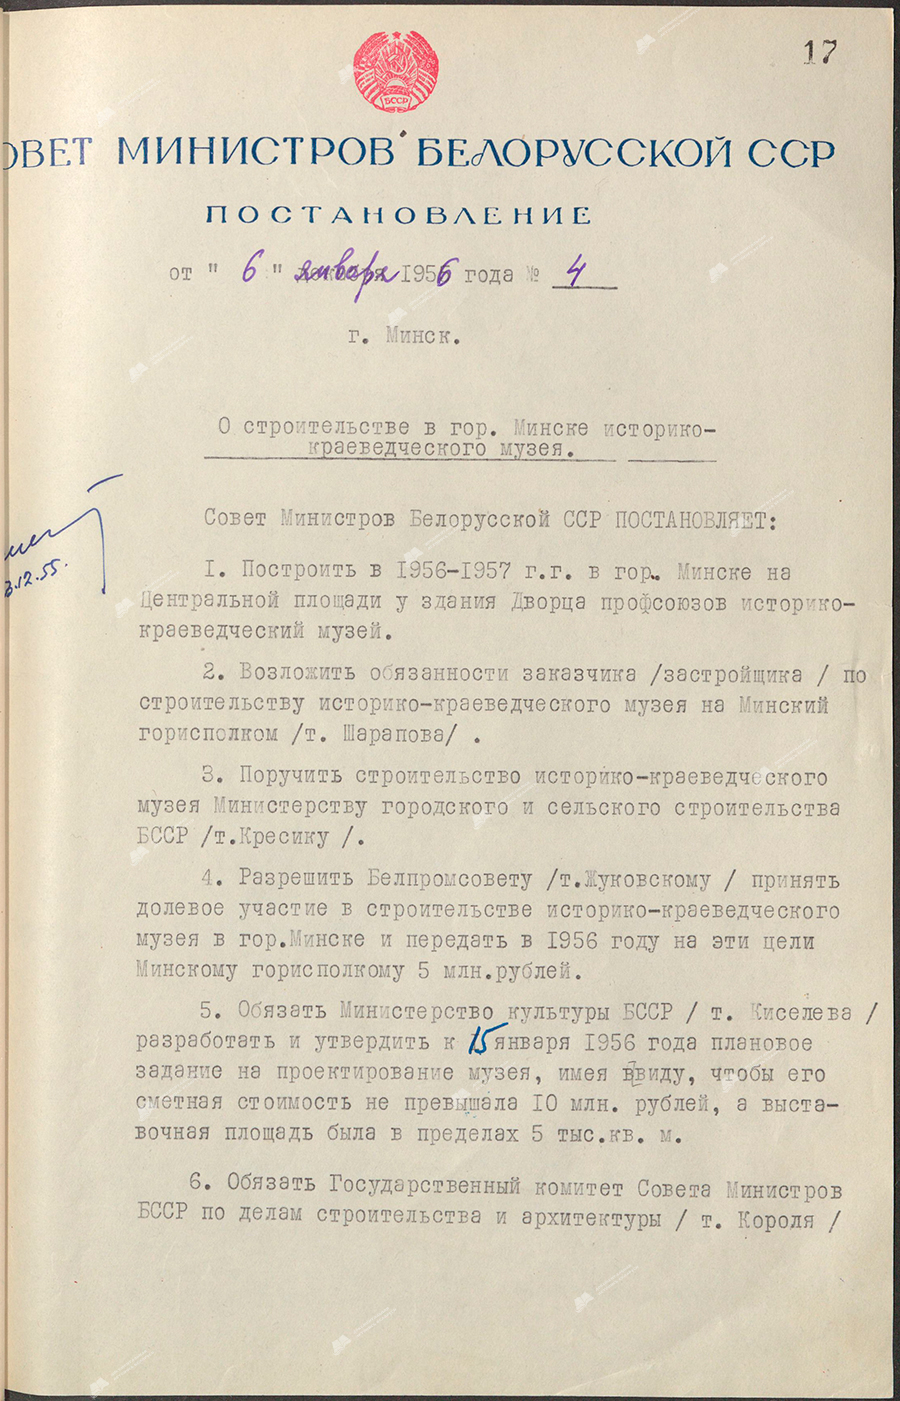 Beschluss Nr. 4 des Ministerrats der Weißrussischen SSR «Über den Bau eines Heimatmuseums in der Stadt Minsk»-с. 0